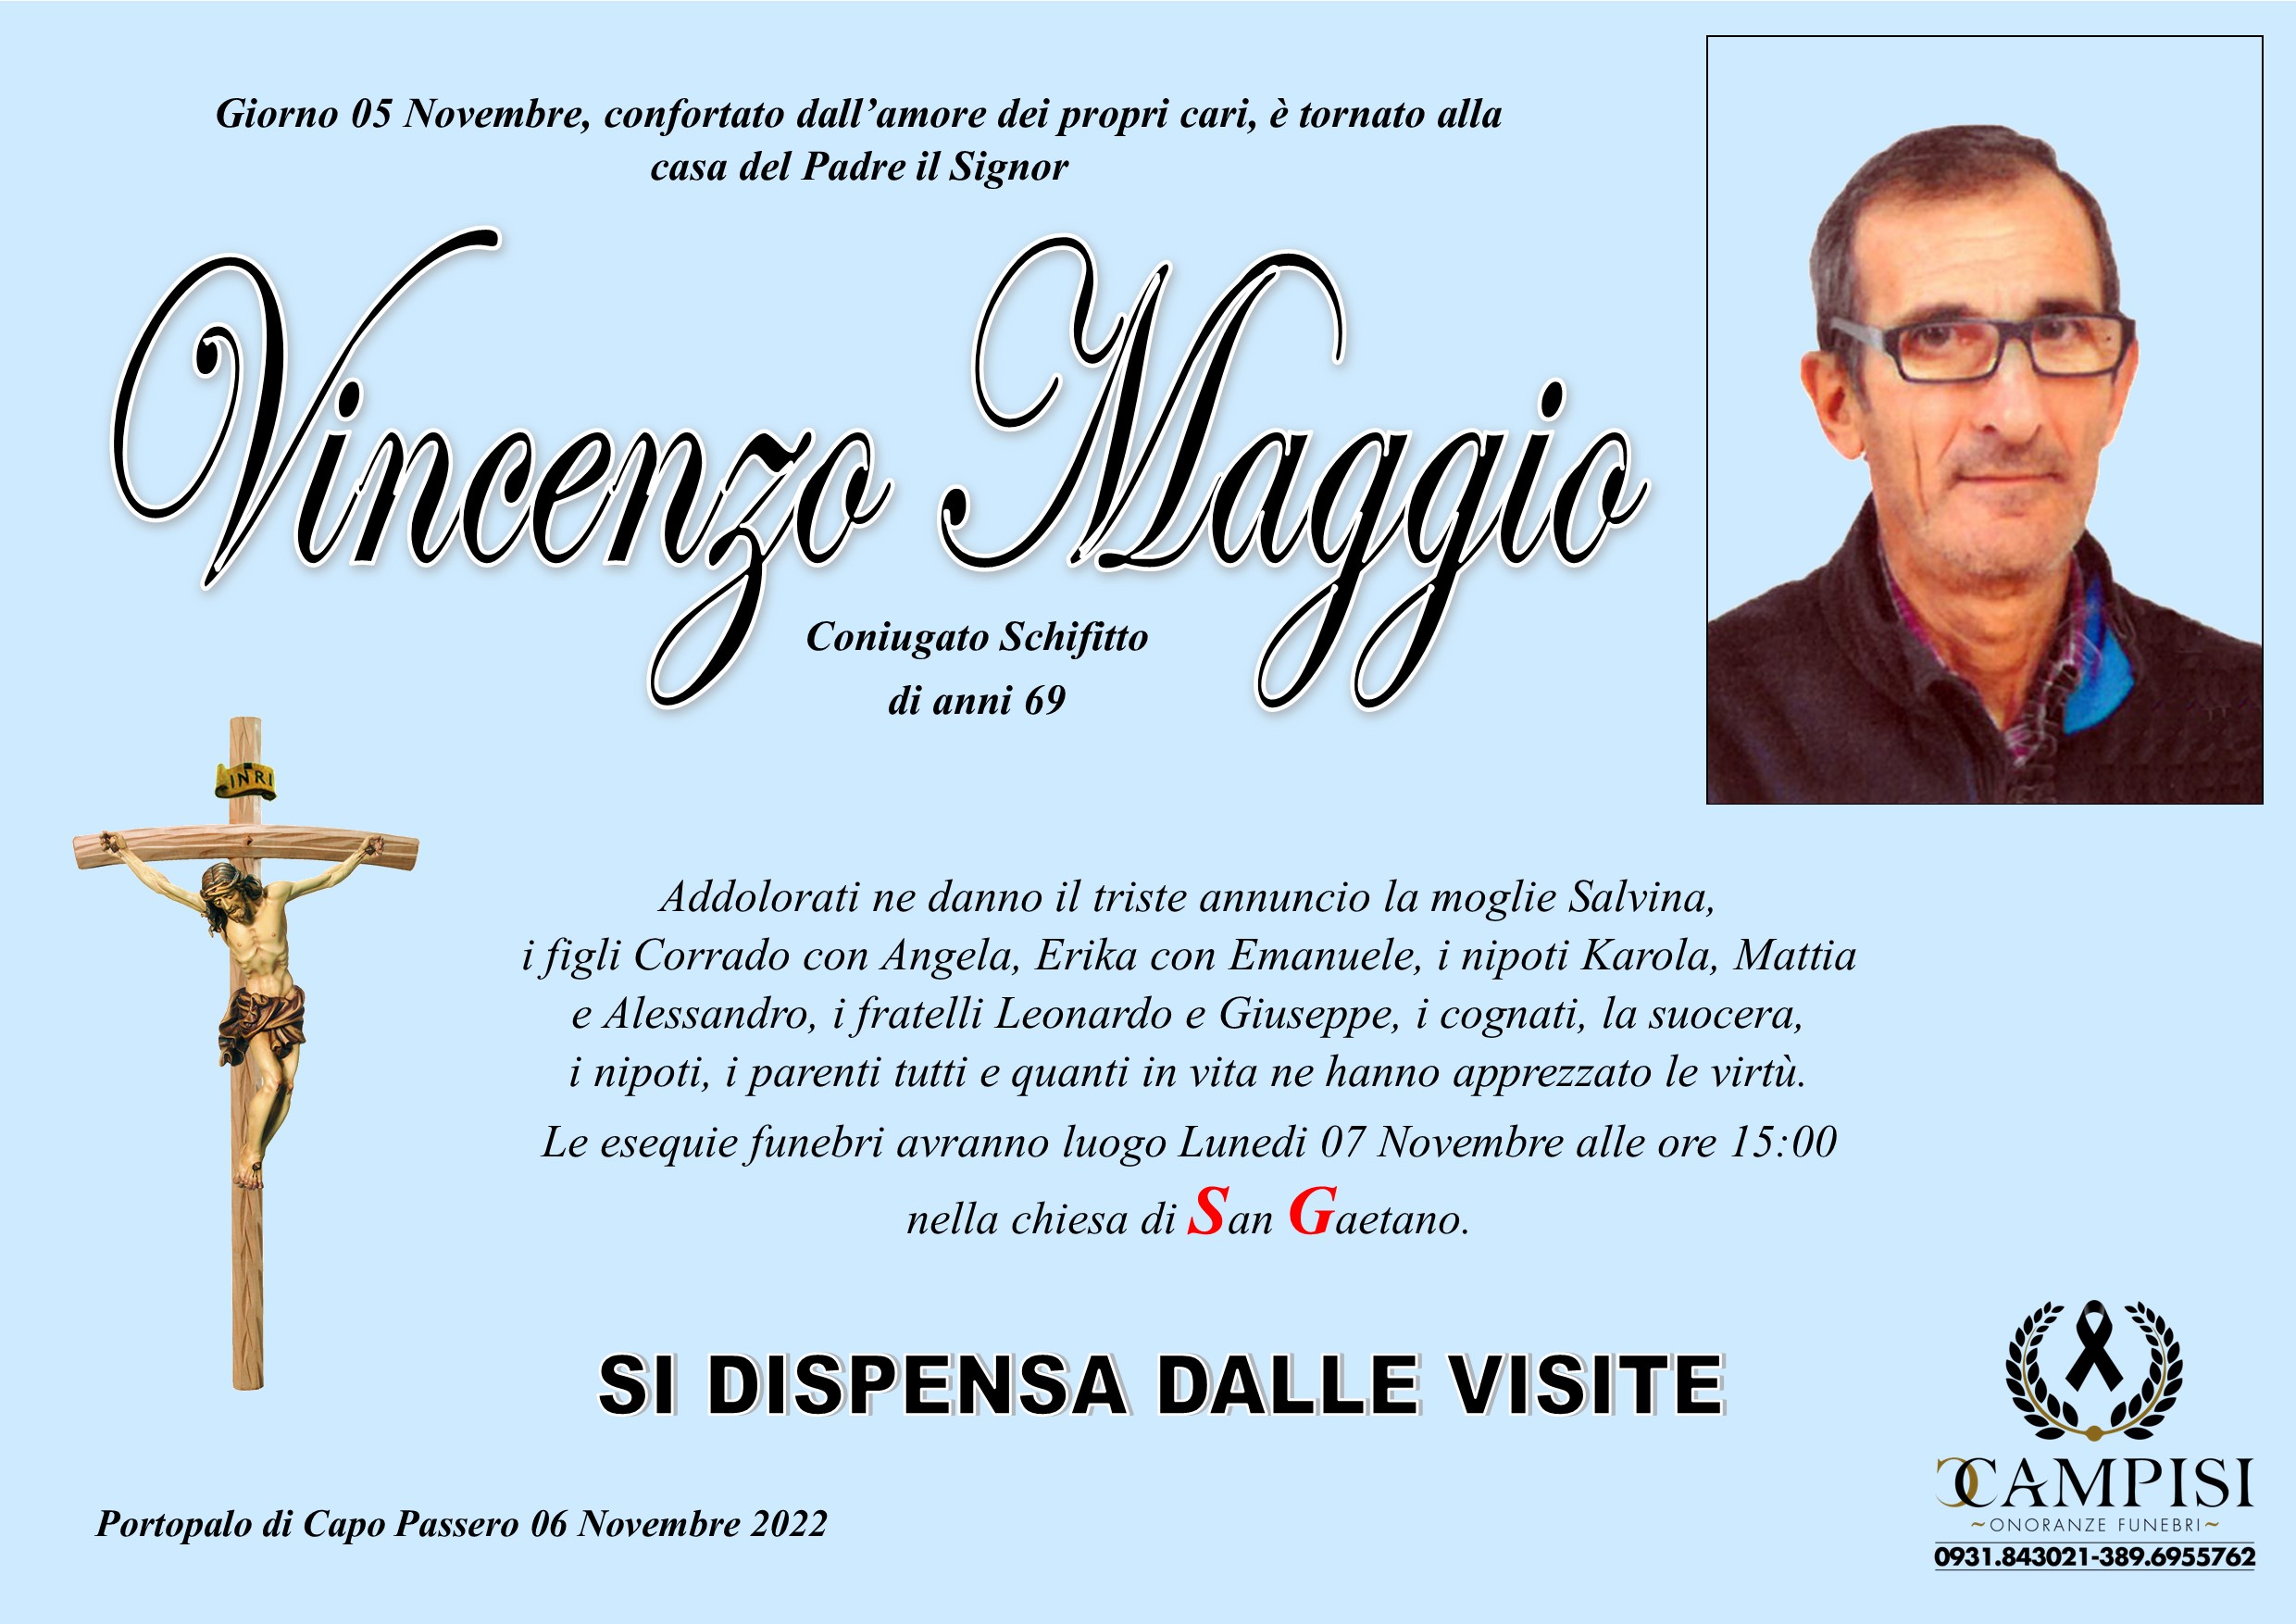 Vincenzo Maggio